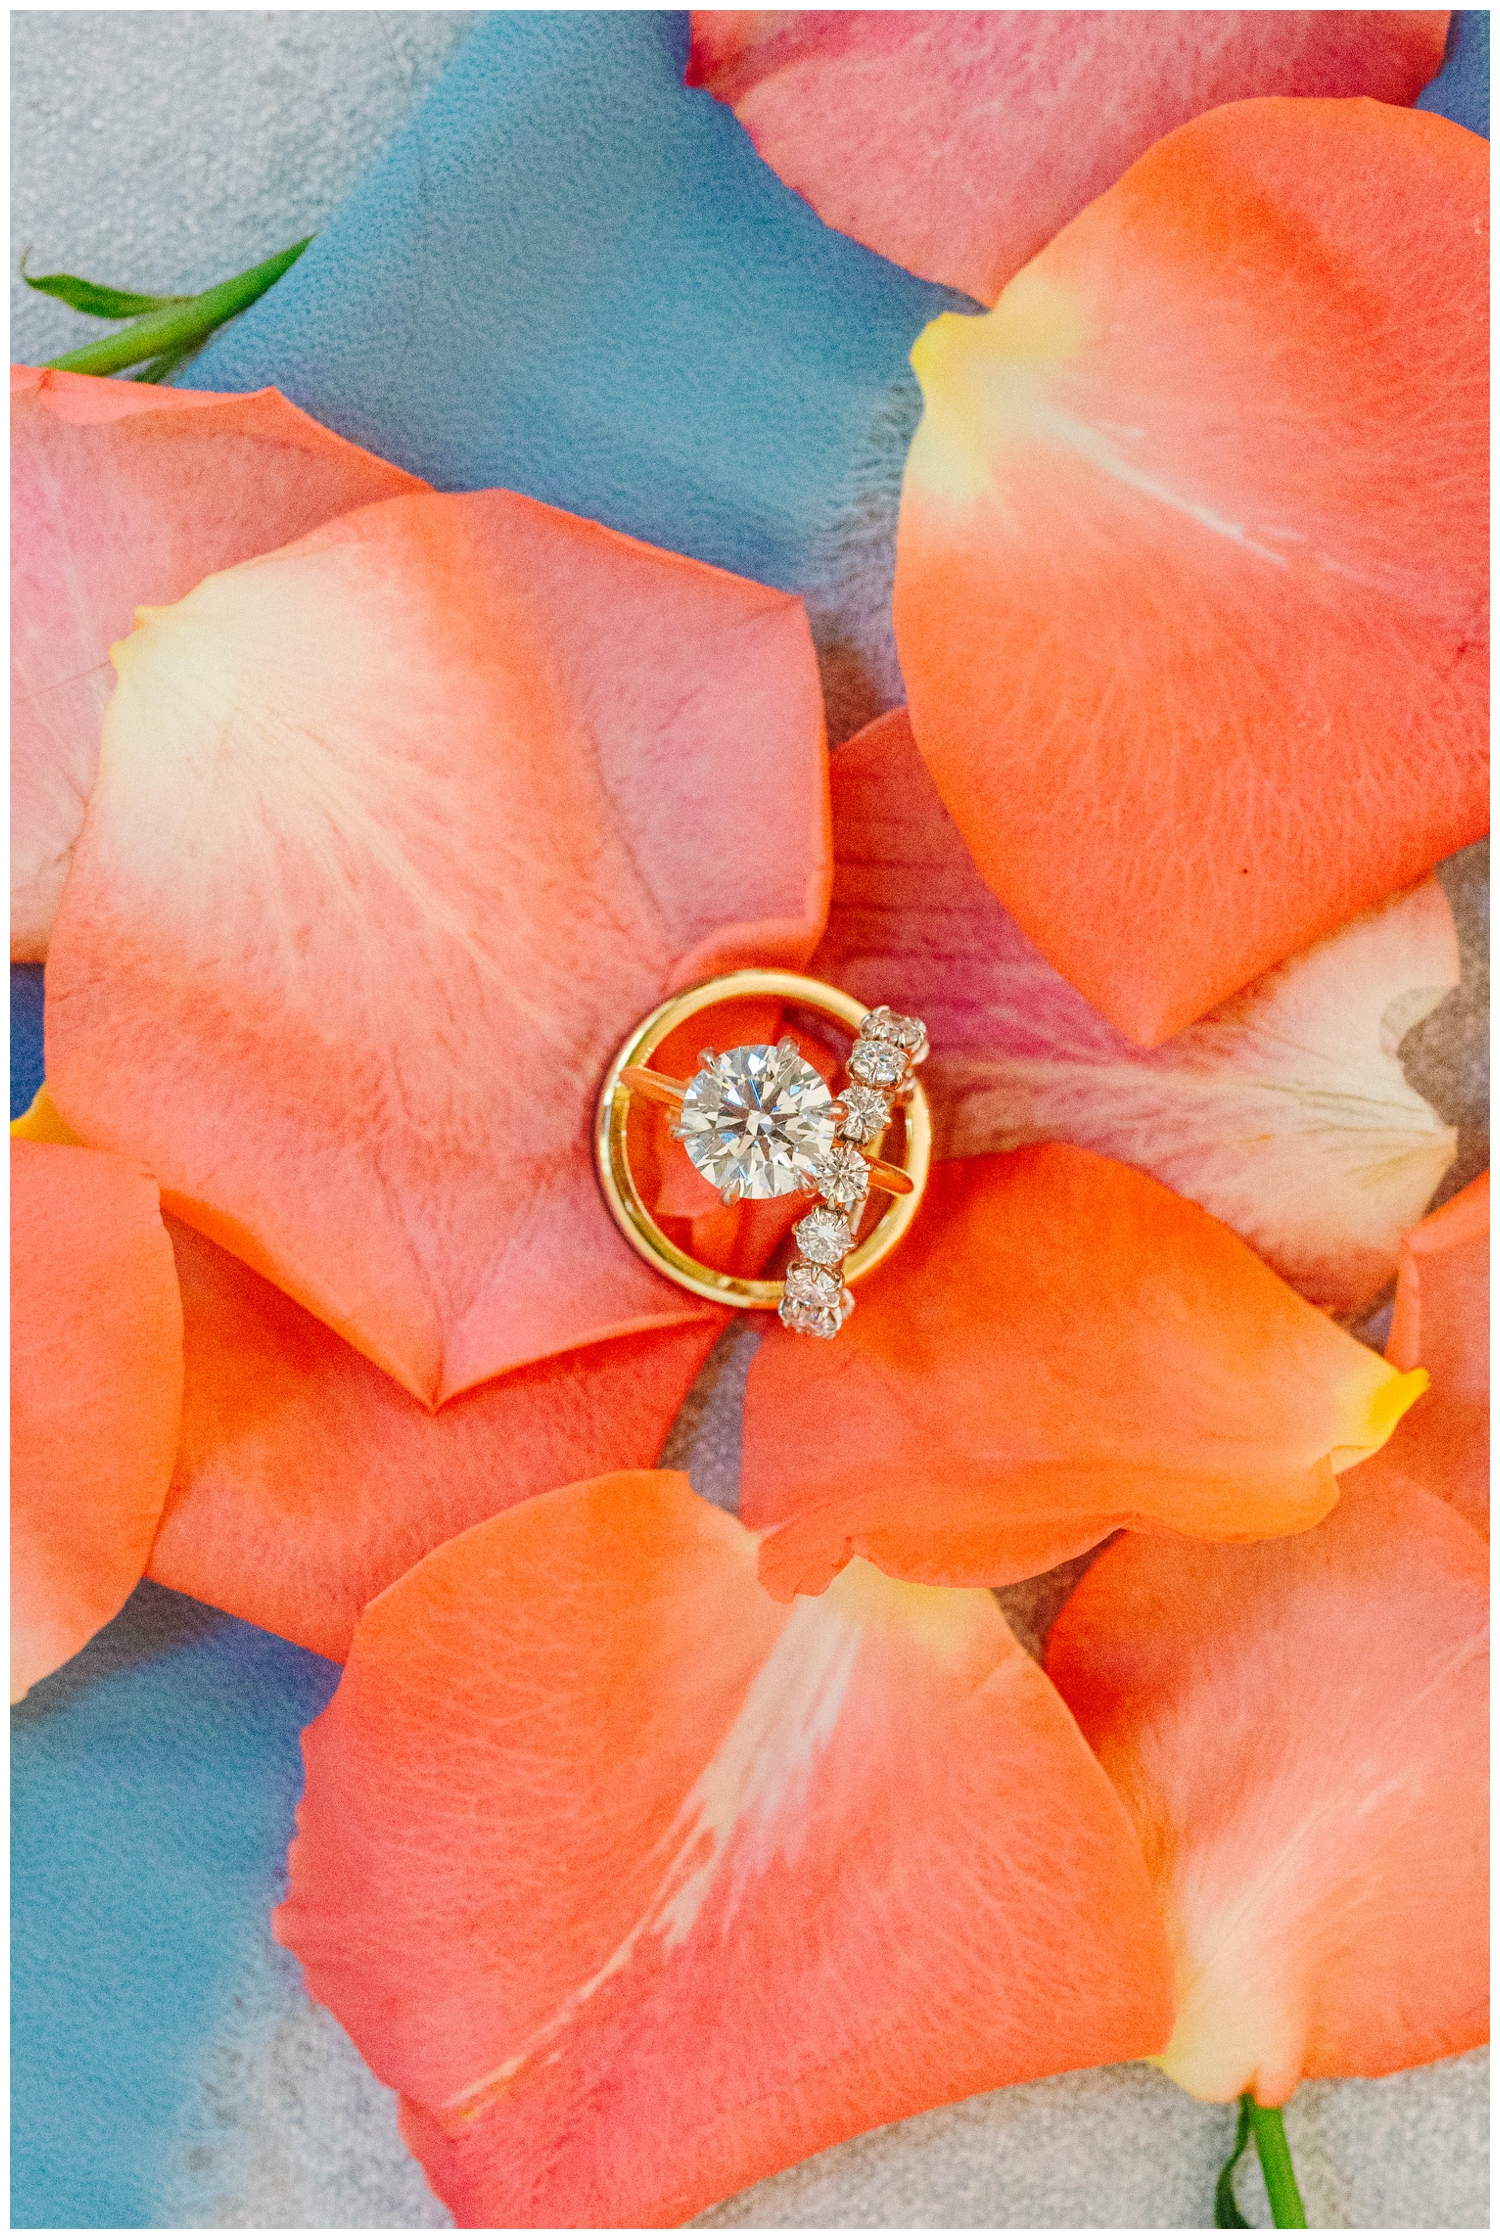 wedding ring sitting in orange rose petals